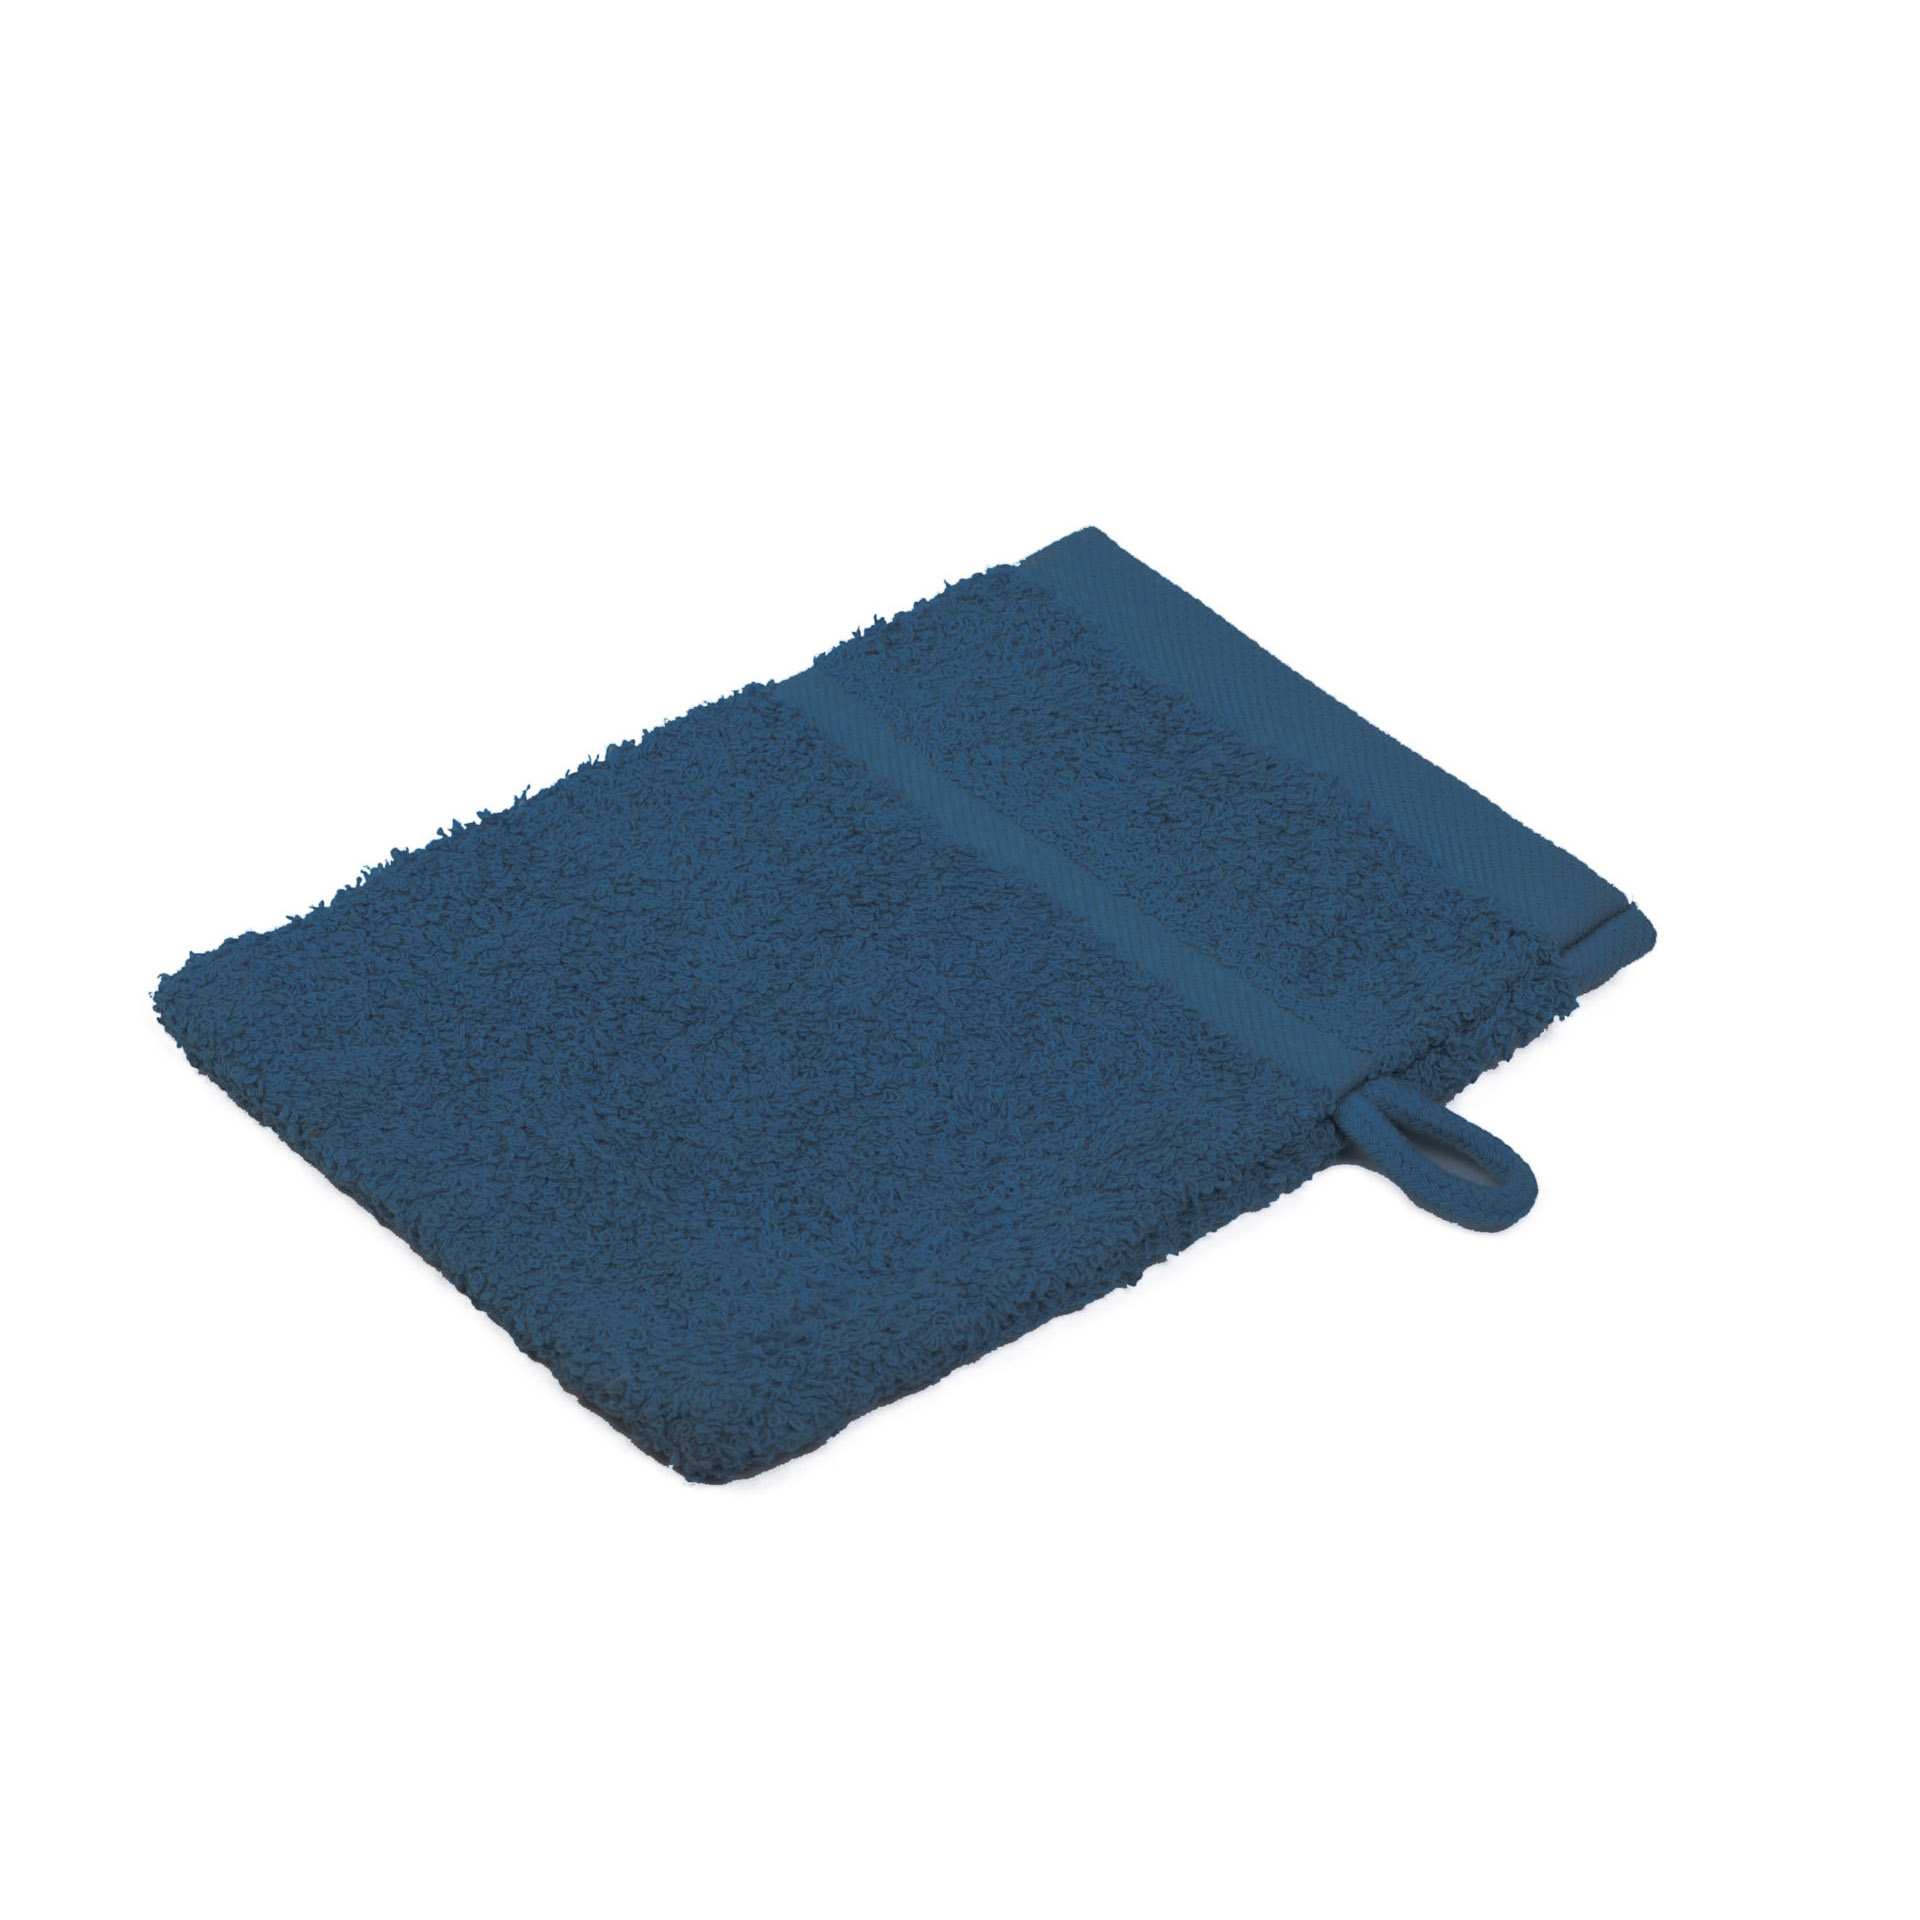 Waschhandschuh - 4-seitig gesäumt - Serie SYLT - kobaltblau - Abm. 16 x 21 cm - Baumwolle - 7881-51-1-D